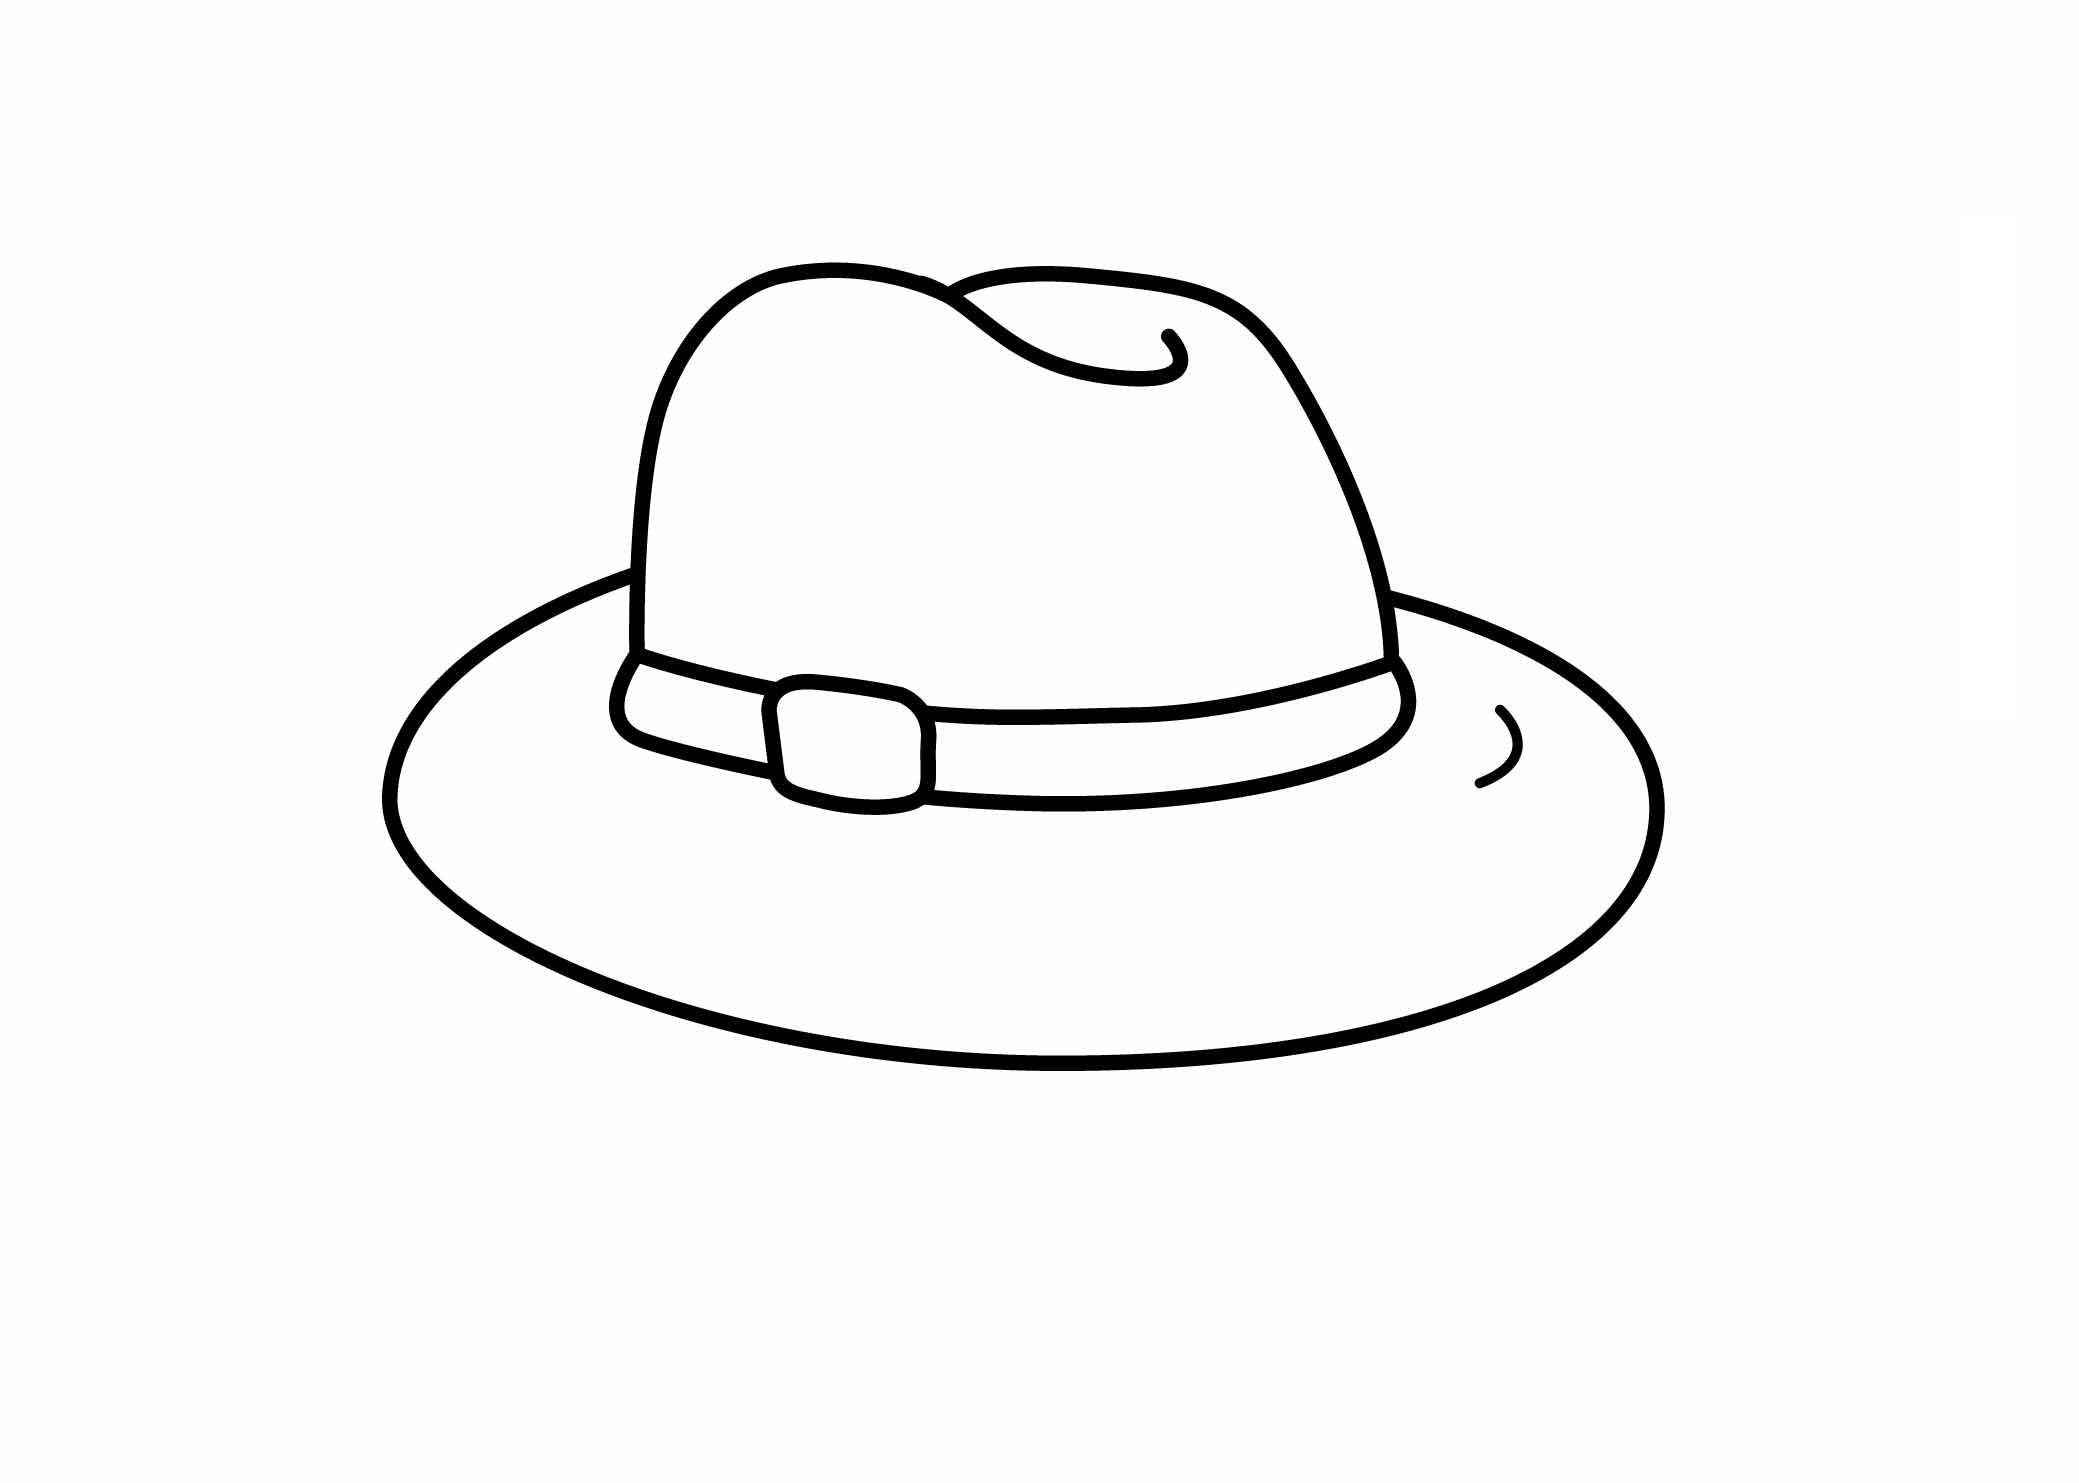 Tranh tô màu chiếc mũ đơn giản